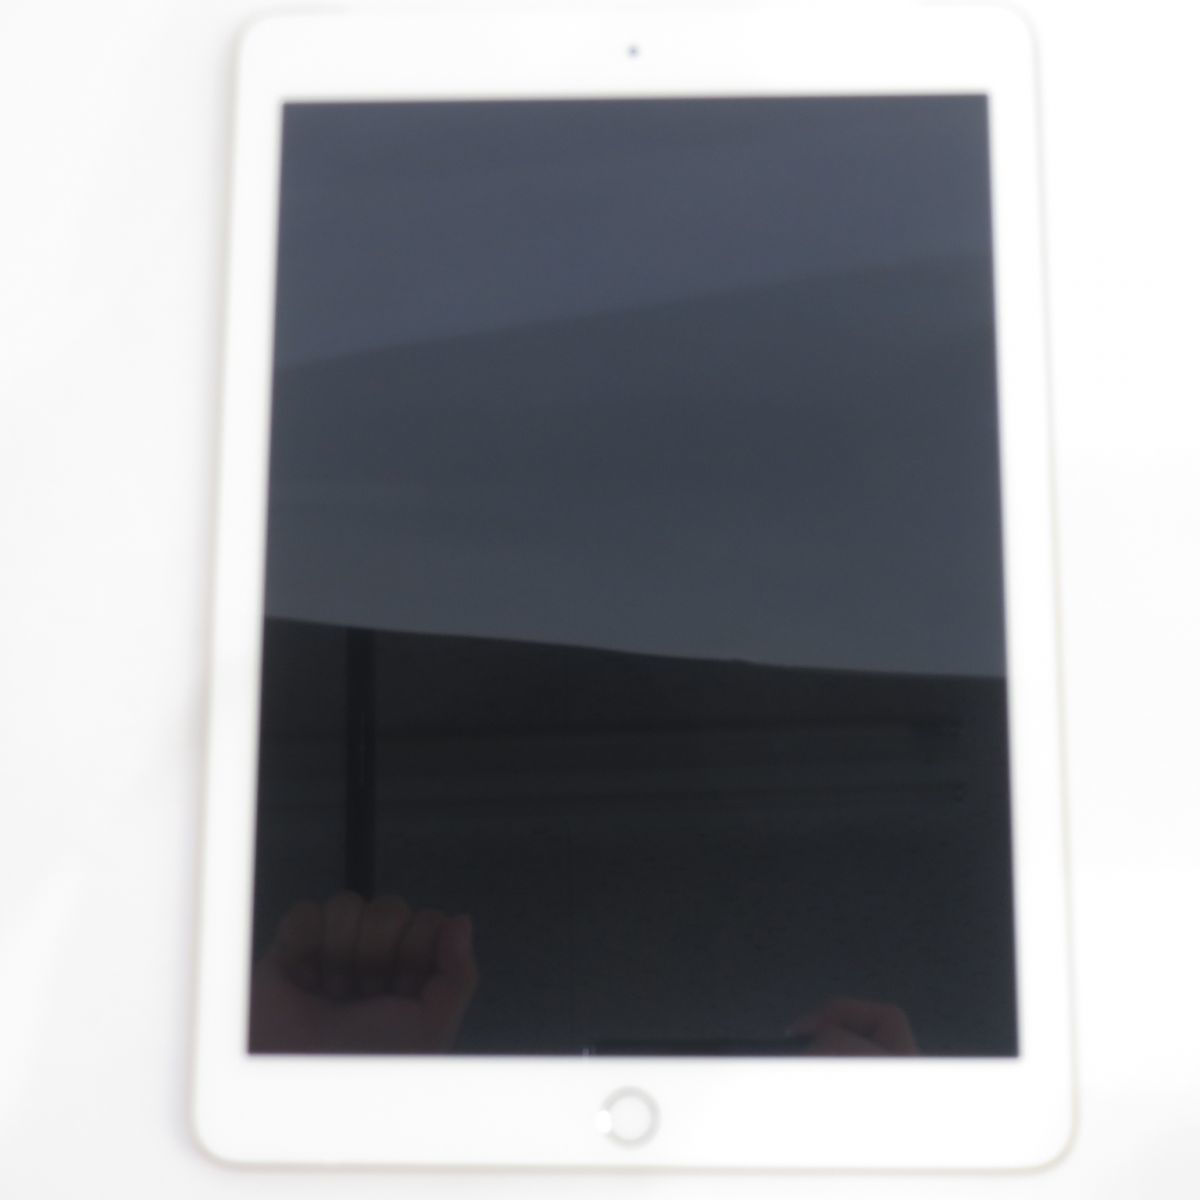 100%正規品 iPad Softbank Apple/アップル 098 Wi-Fi+Cellular ※中古